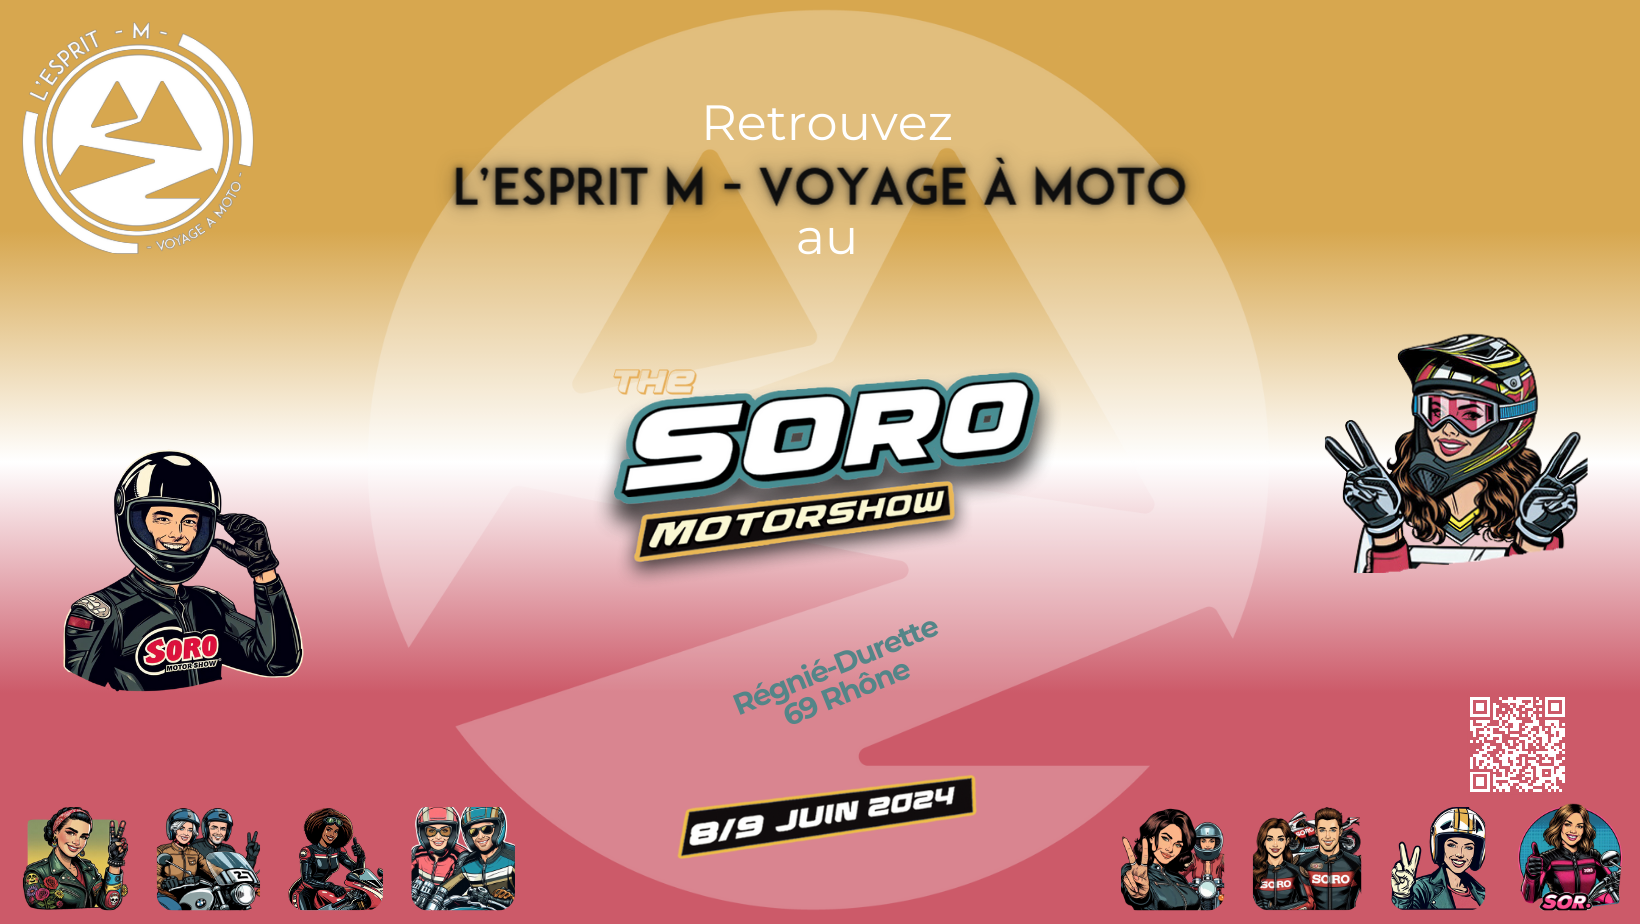 L'Esprit M - Voyage à moto au salon Soro Motorshow 2024 les 8 et 9 juin prochains à Régnié-Durette (69, Rhône)